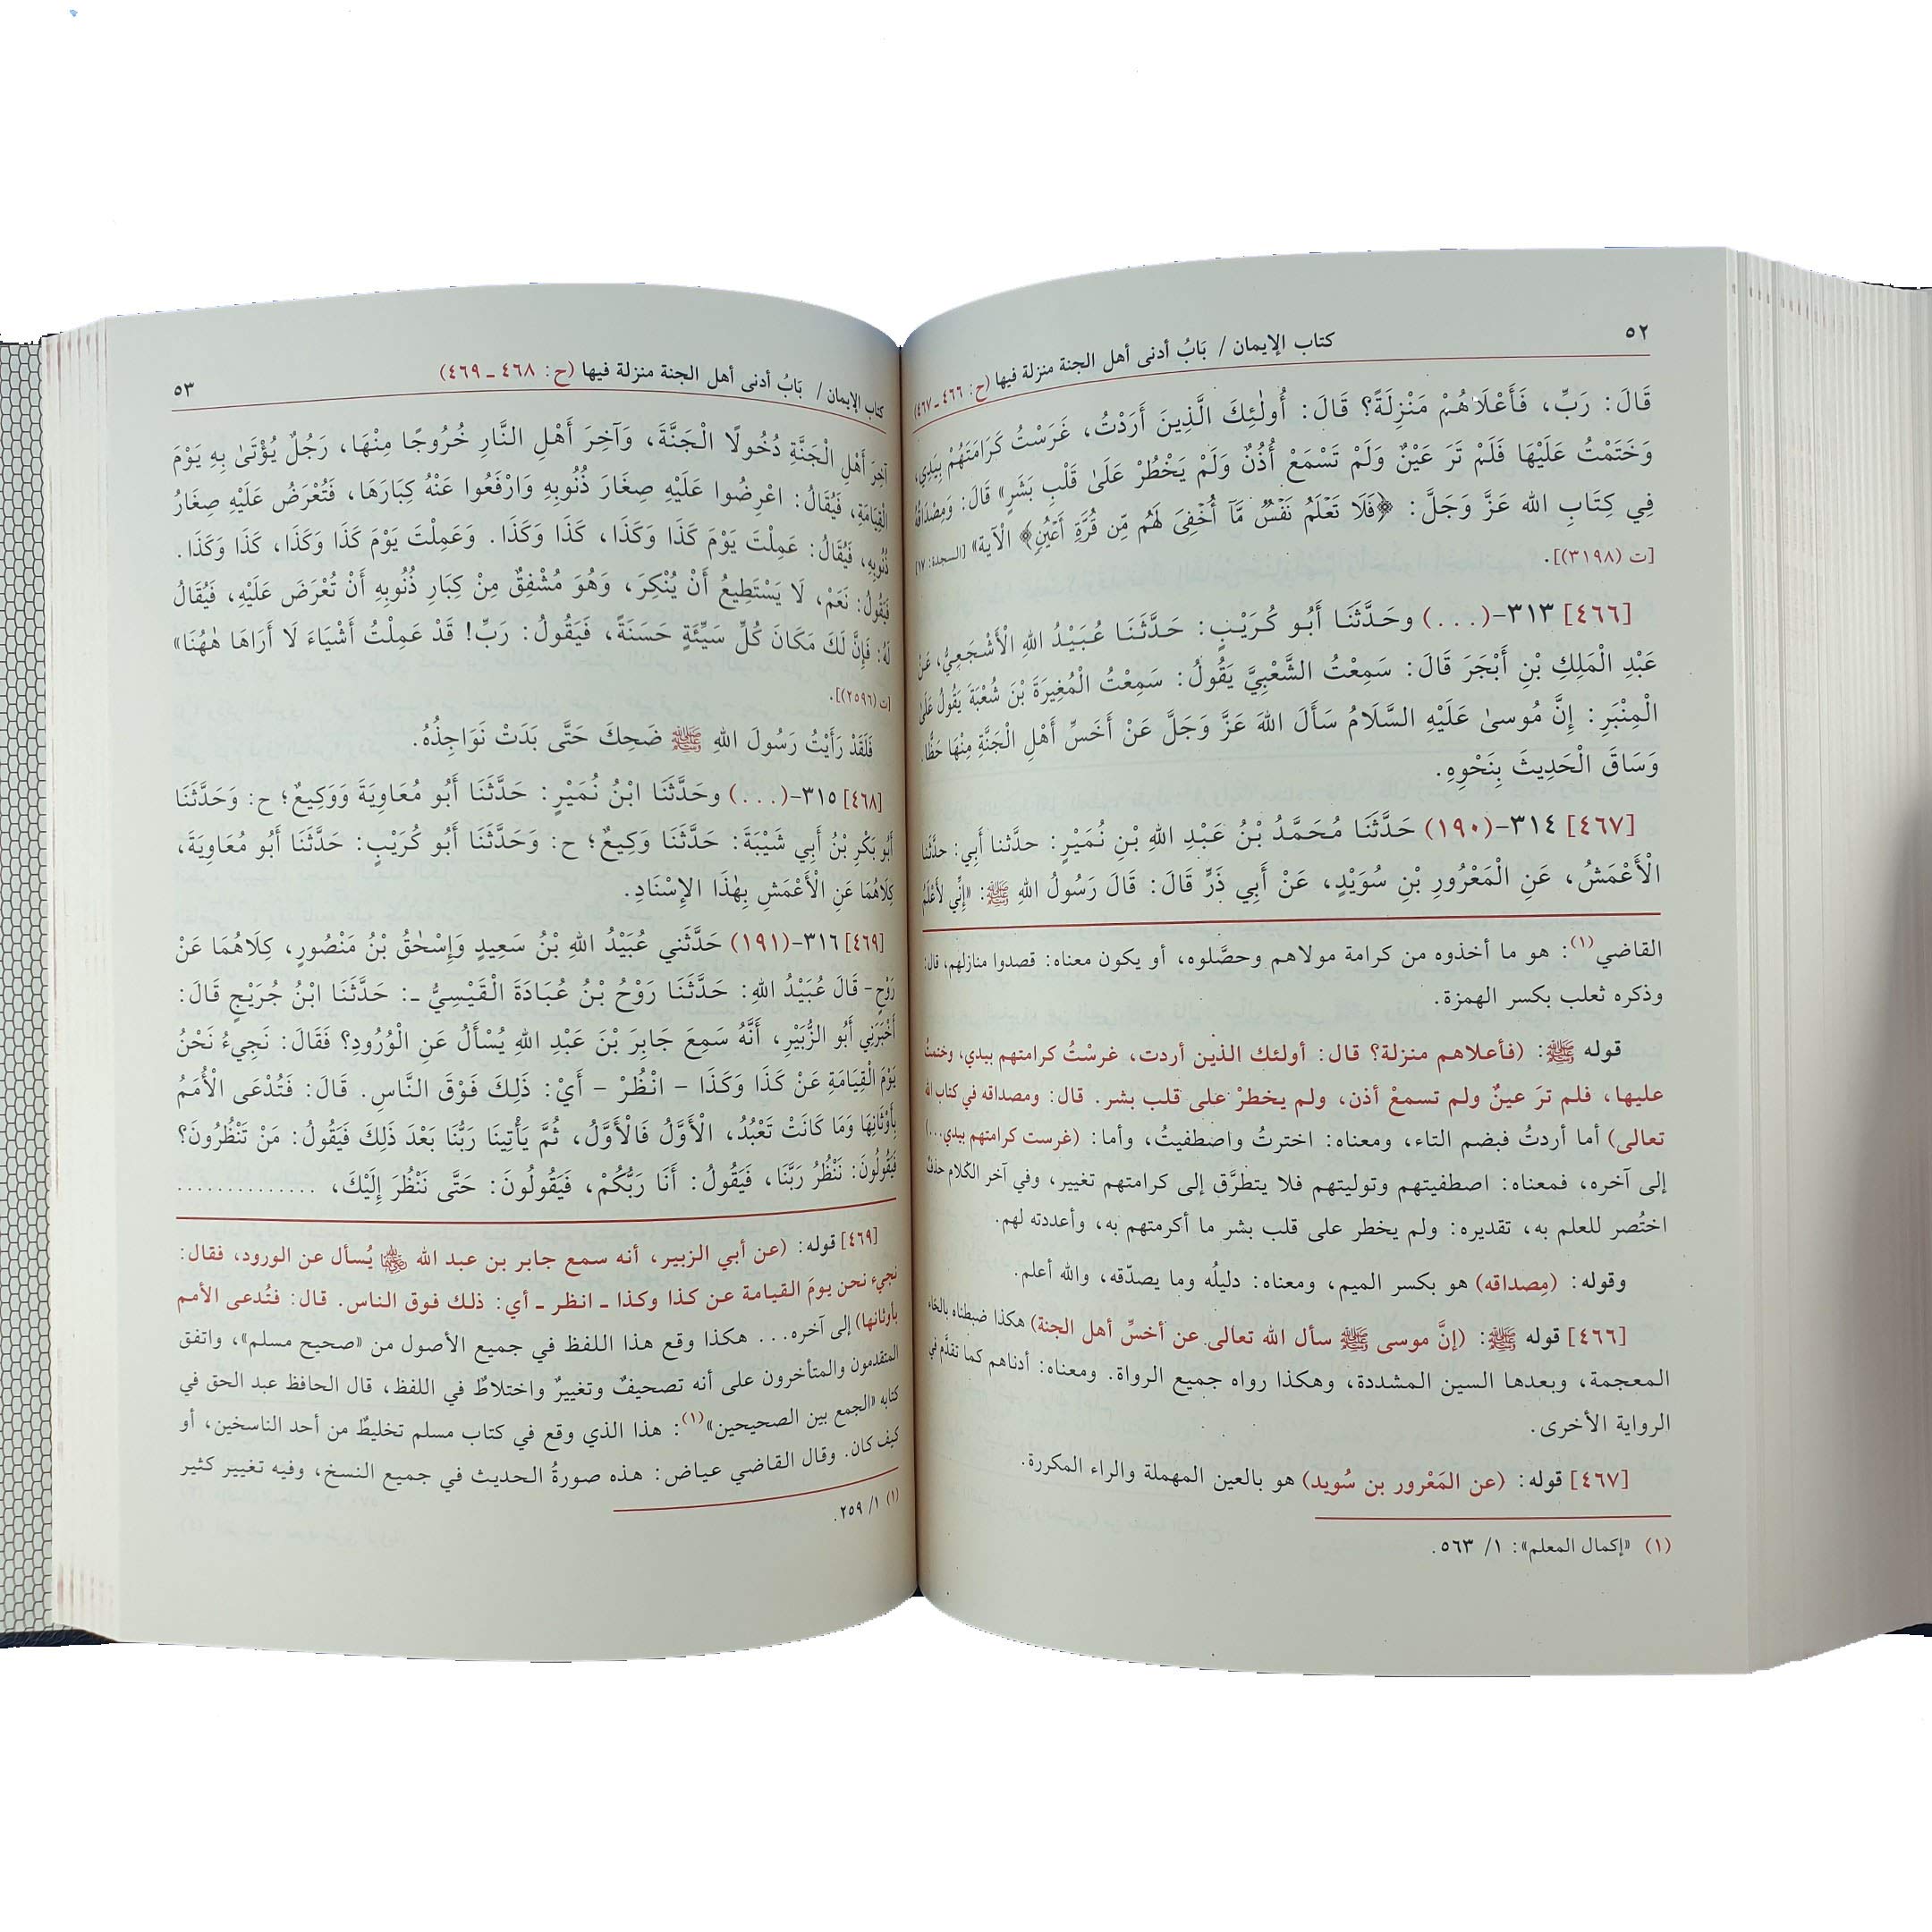 ‎صحيح مسلم بشرح النووي 6 مجلدات‎ كتب إسلامية الإمام النووي